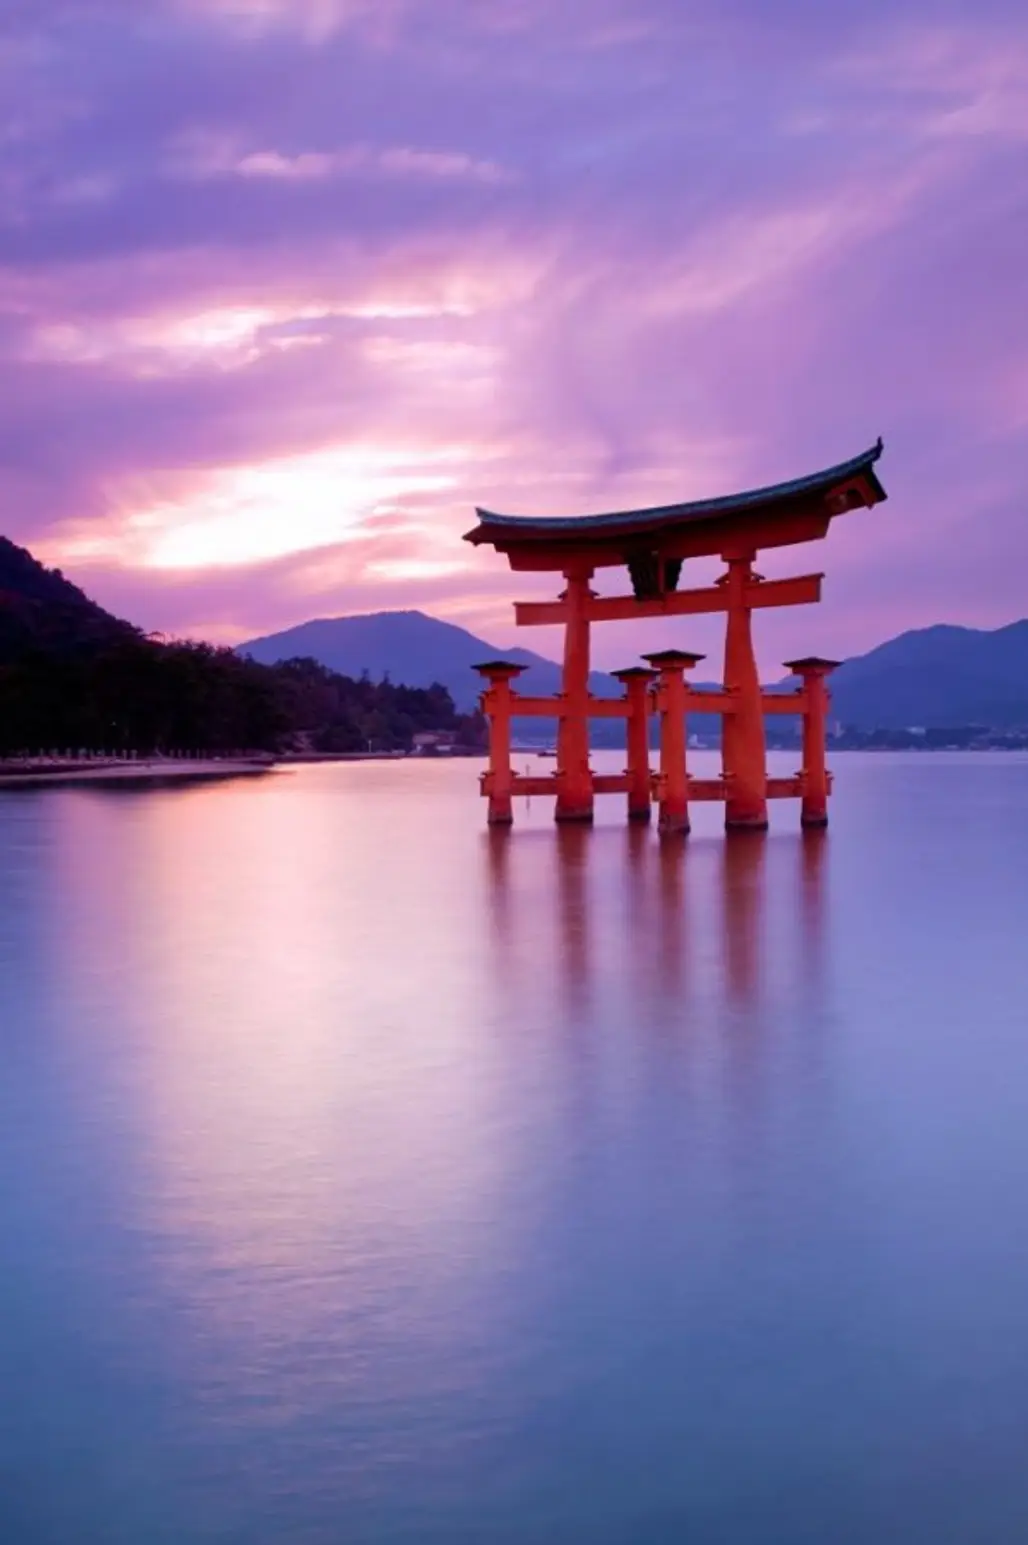 Miyajima,Itsukushima Shrine,Itsukushima,sky,reflection,